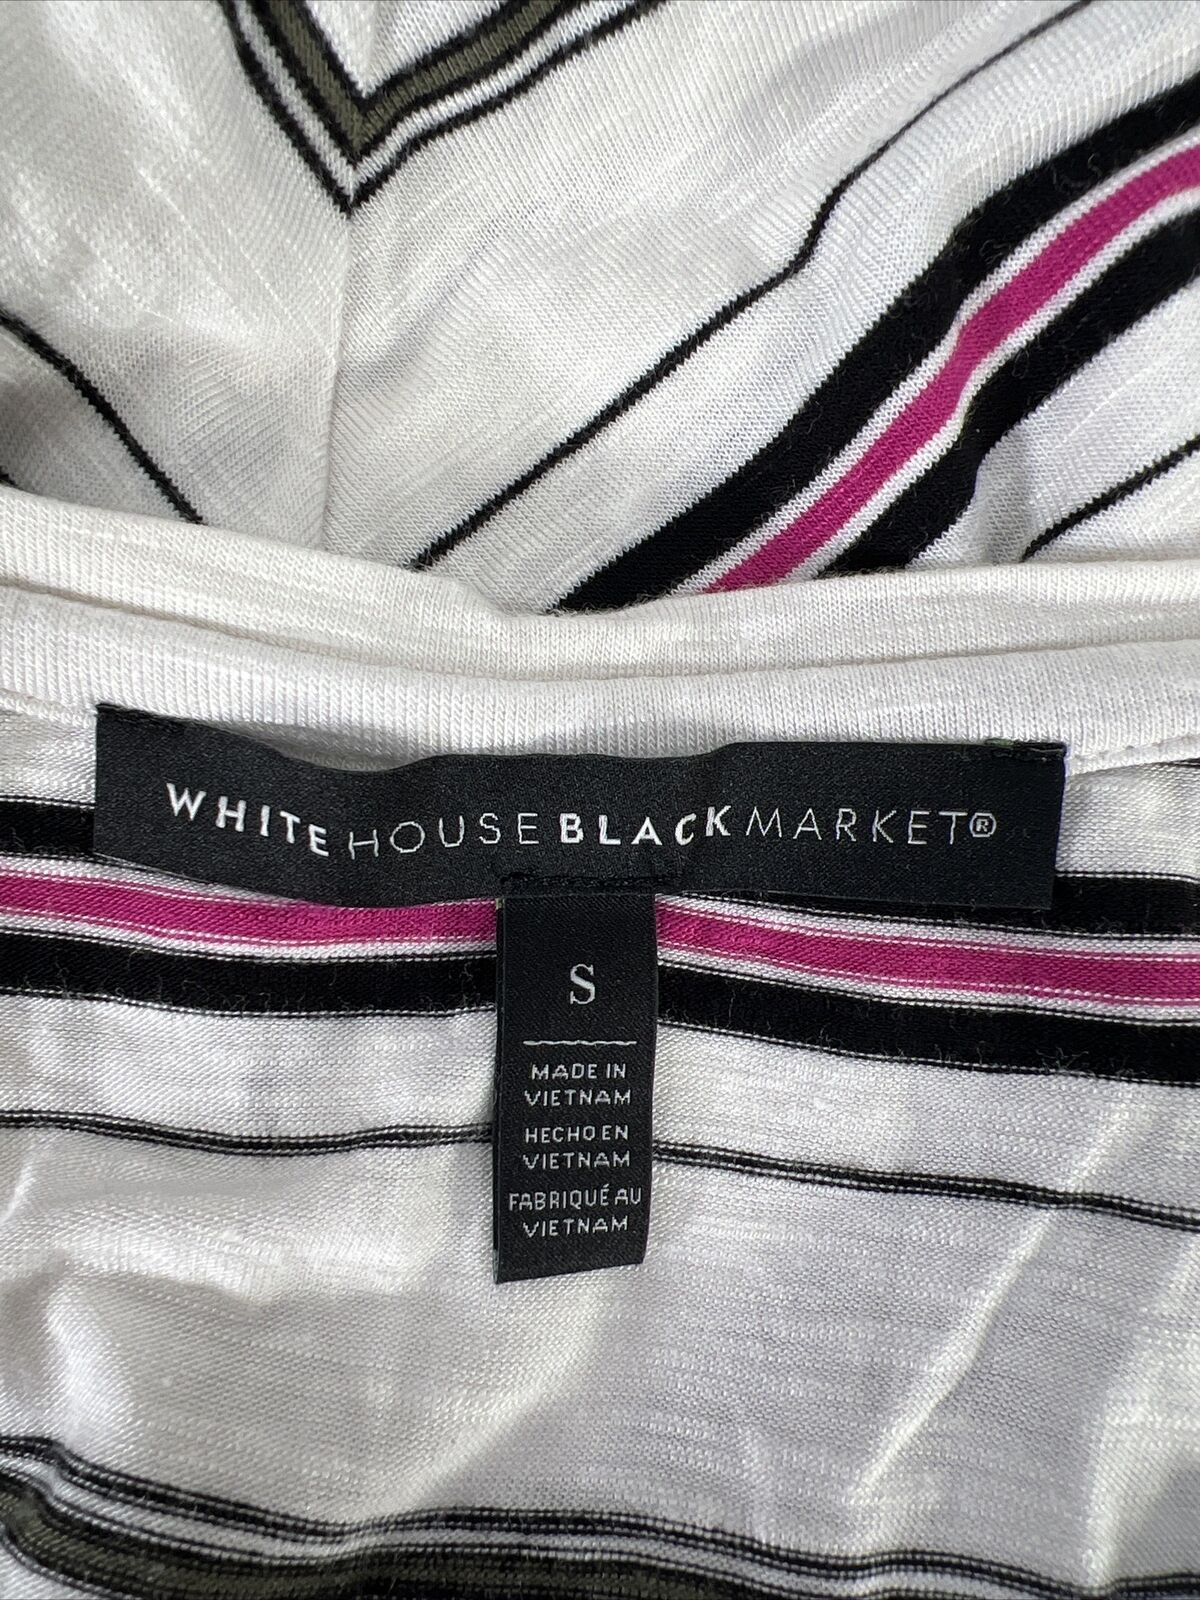 White House Black Market Women's White/Black Striped V-Neck T-Shirt - S